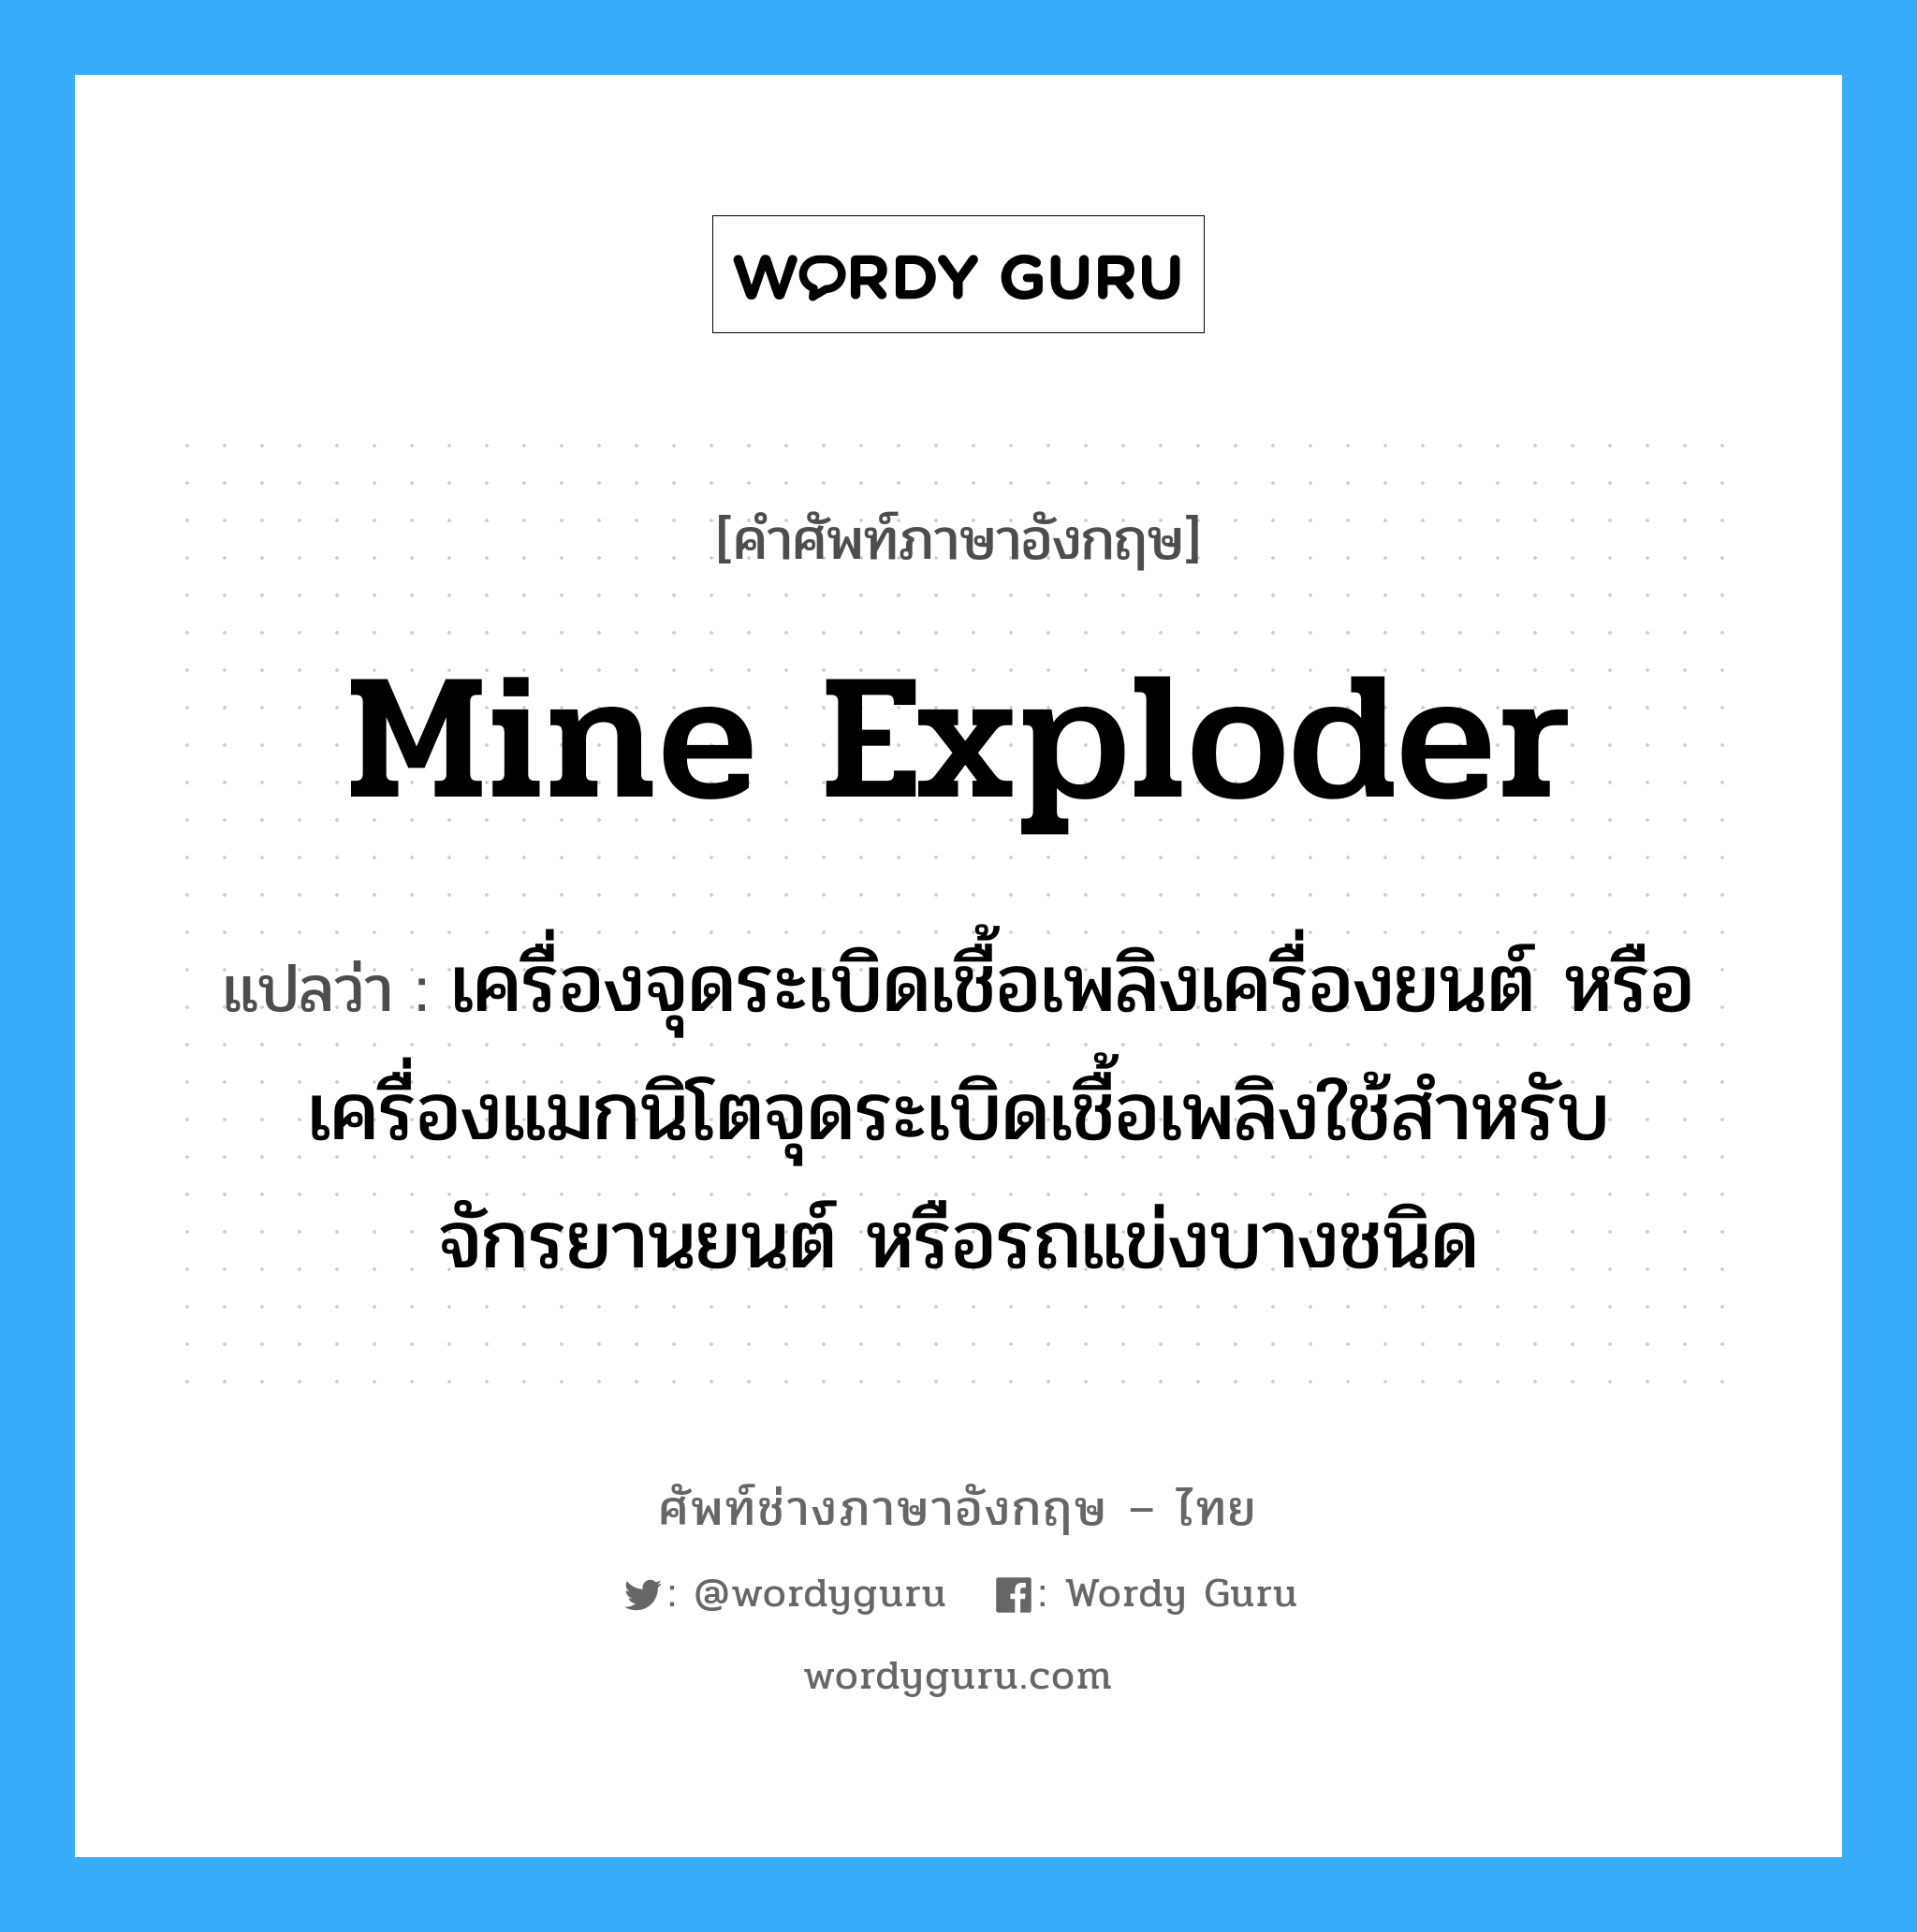 mine exploder แปลว่า?, คำศัพท์ช่างภาษาอังกฤษ - ไทย mine exploder คำศัพท์ภาษาอังกฤษ mine exploder แปลว่า เครื่องจุดระเบิดเชื้อเพลิงเครื่องยนต์ หรือเครื่องแมกนิโตจุดระเบิดเชื้อเพลิงใช้สำหรับจักรยานยนต์ หรือรถแข่งบางชนิด